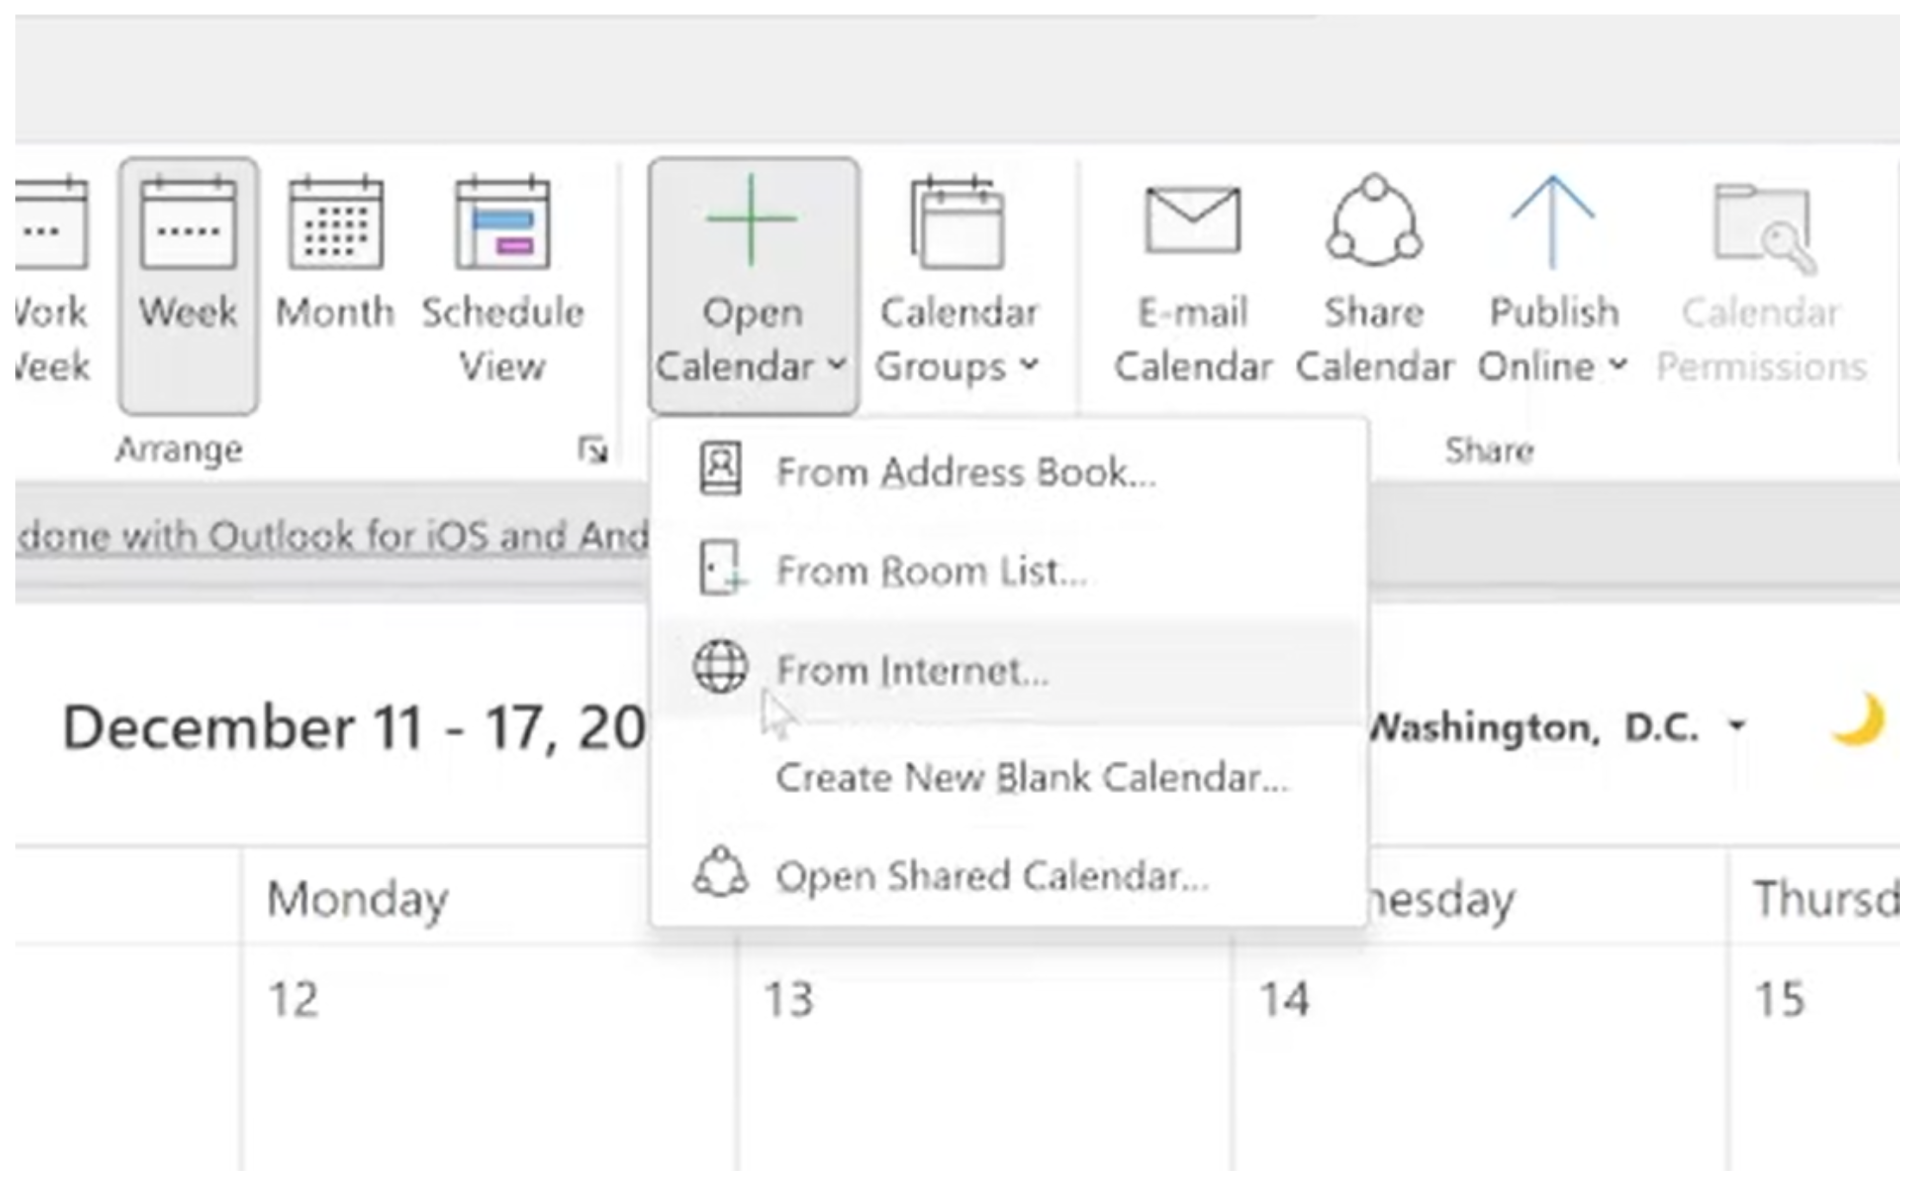 Subscribe to Outlook Calendar